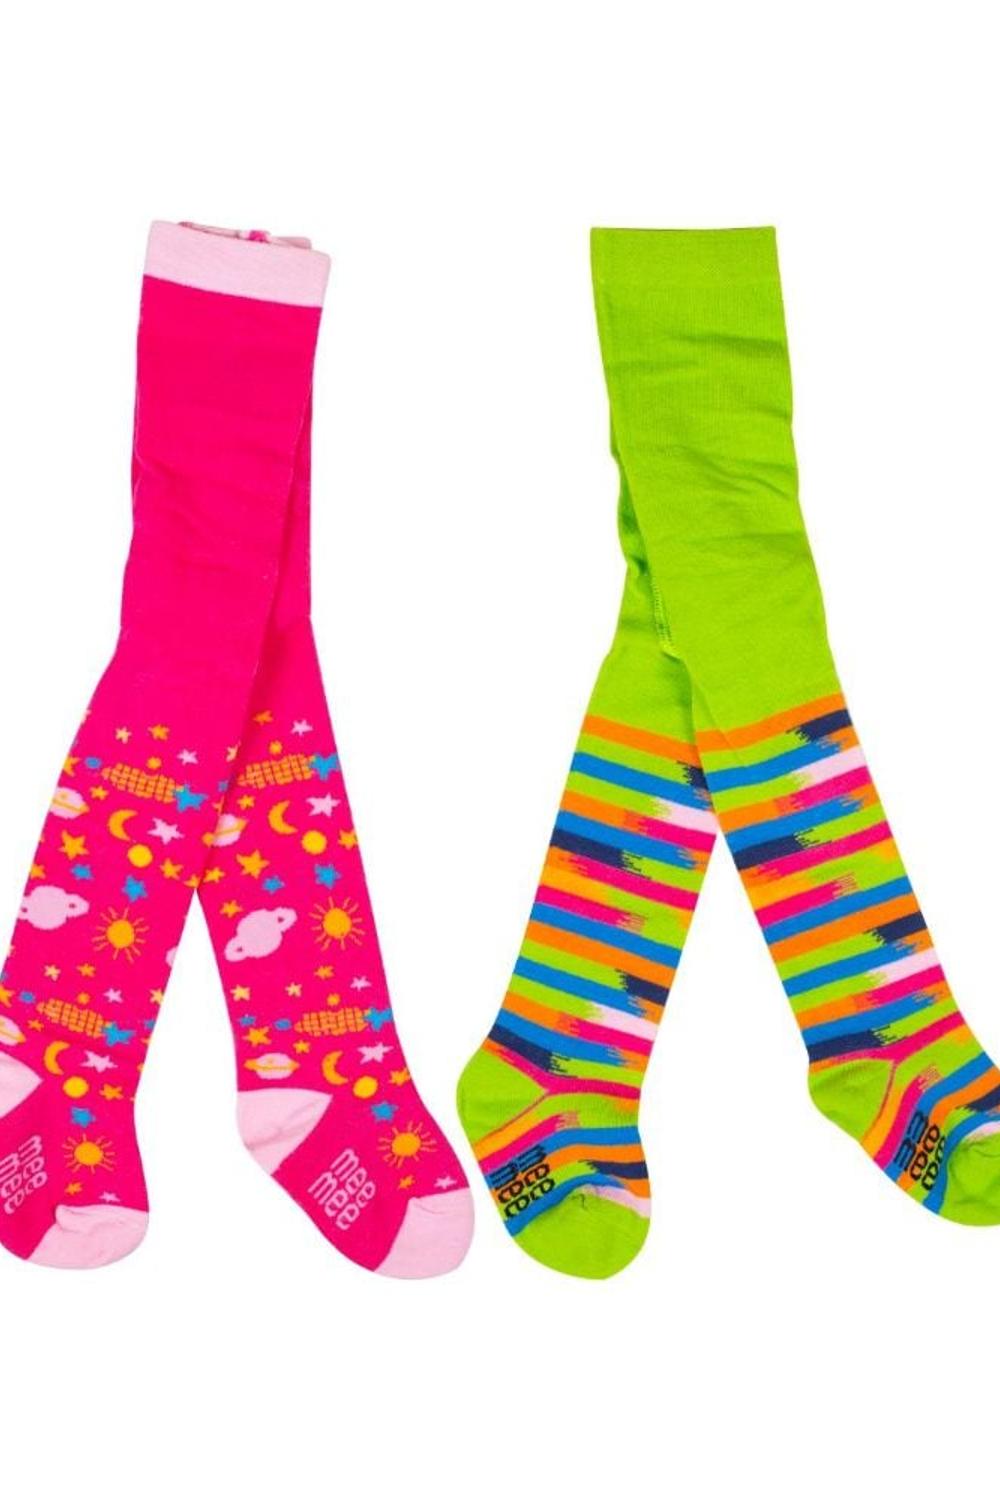 Mee Mee Cozy Feet Anti-Skid Baby Stockings(Pack Of 2)(Pink_green)